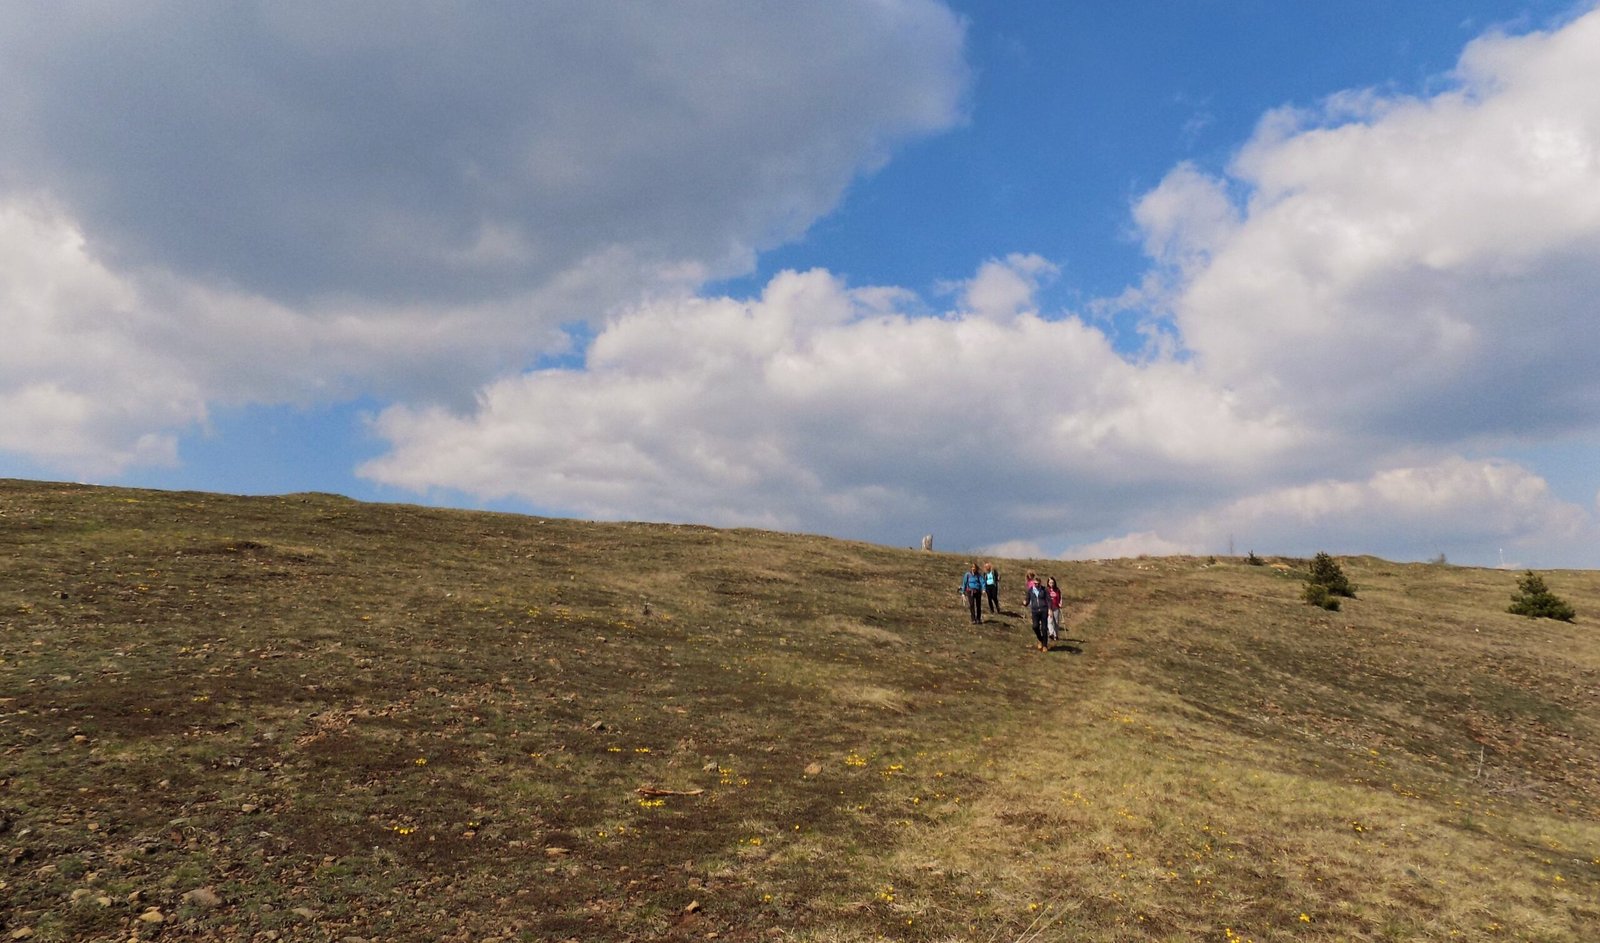 Mount Maljen-Tometino field, hiking in fairytale landscapes